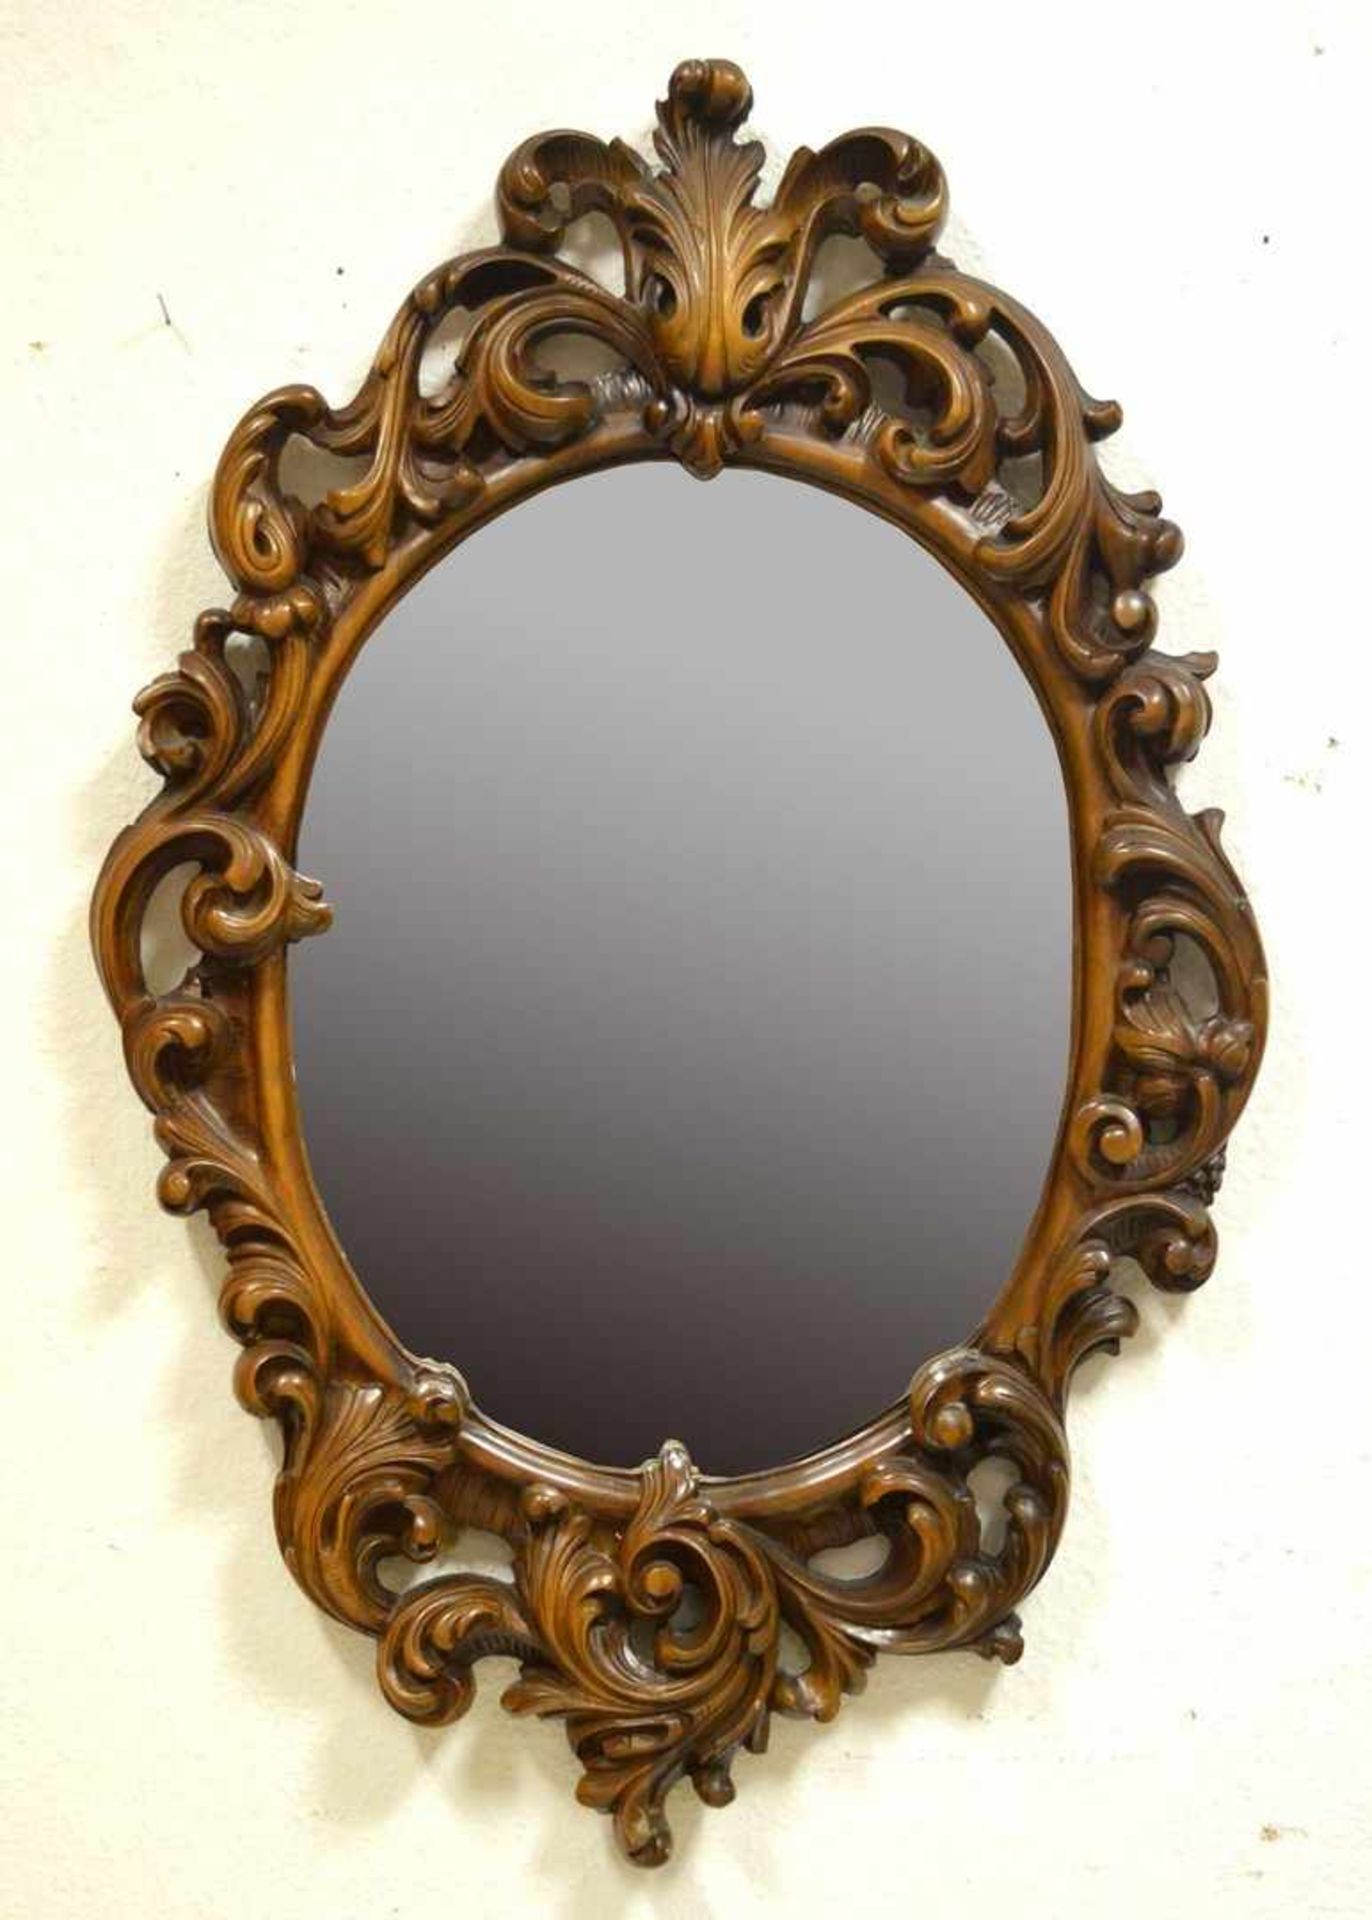 Spiegel Hartholz, geschnitzt, im Barock-Stil, oval, durchbrochen, 89 X 59 cm